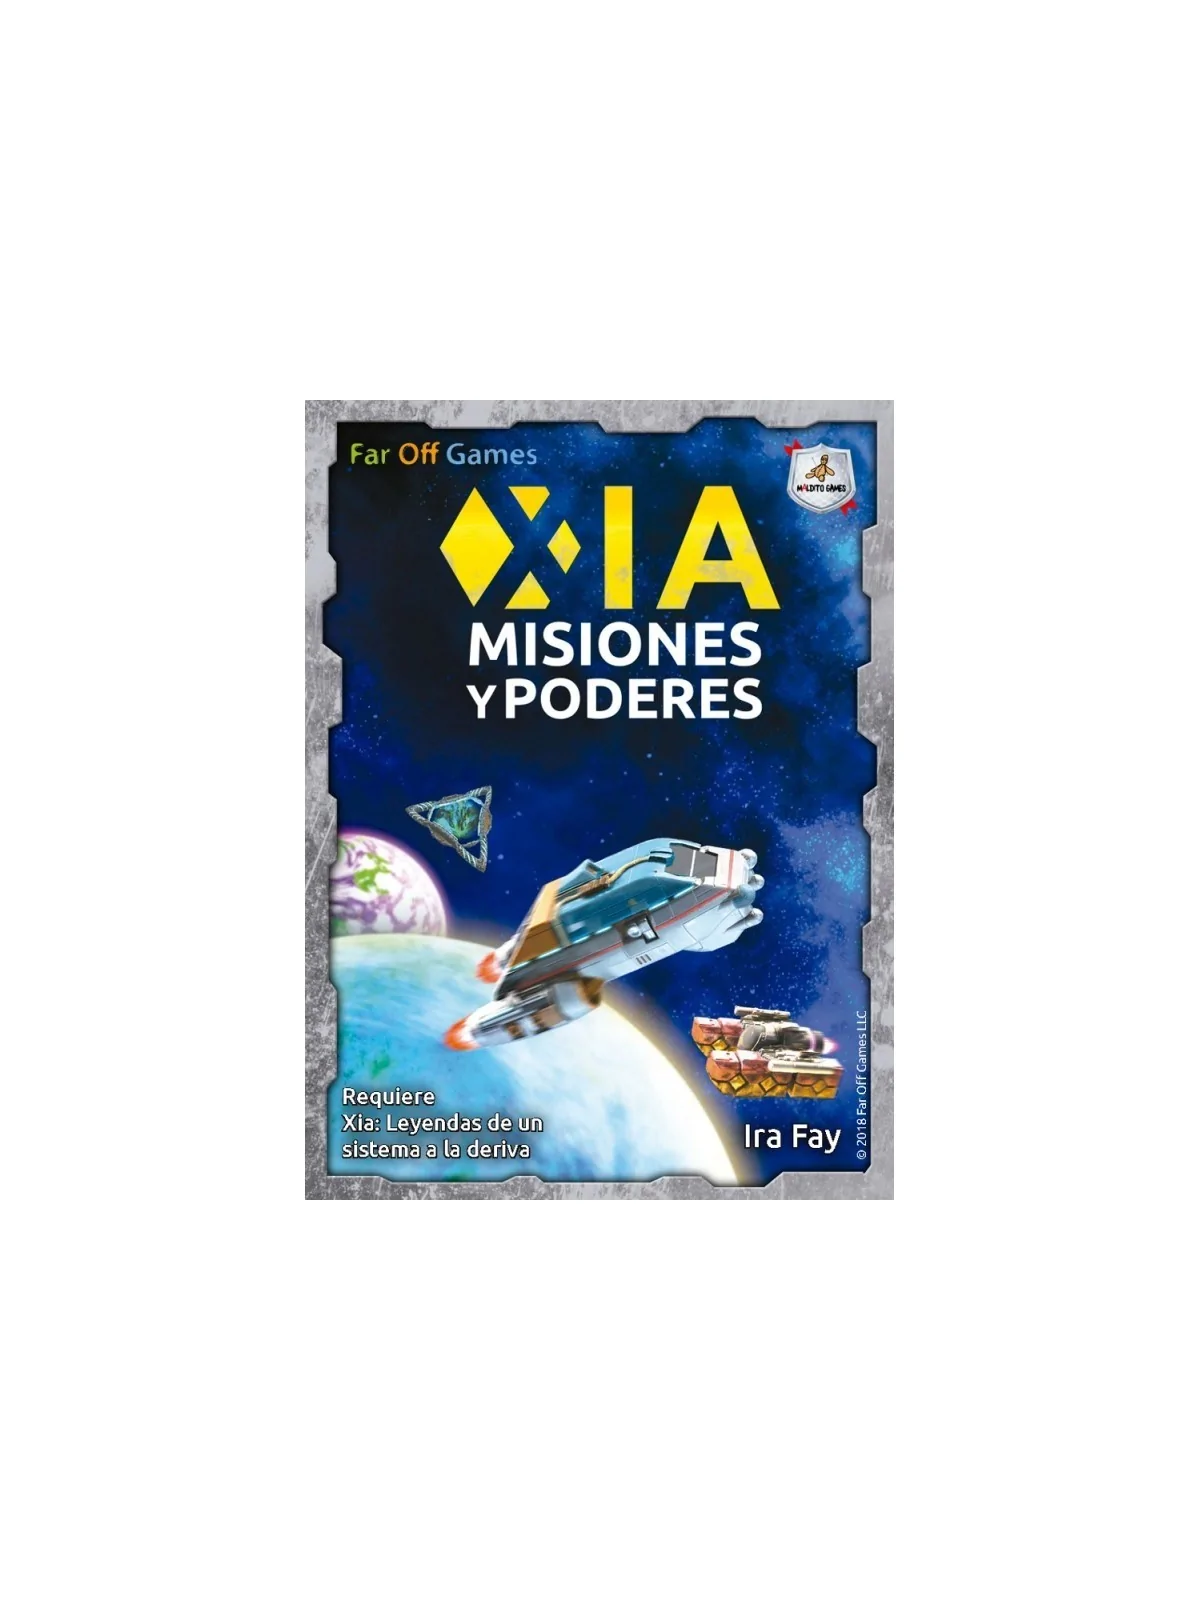 Comprar Xia: Misiones y poderes barato al mejor precio 13,50 € de Mald